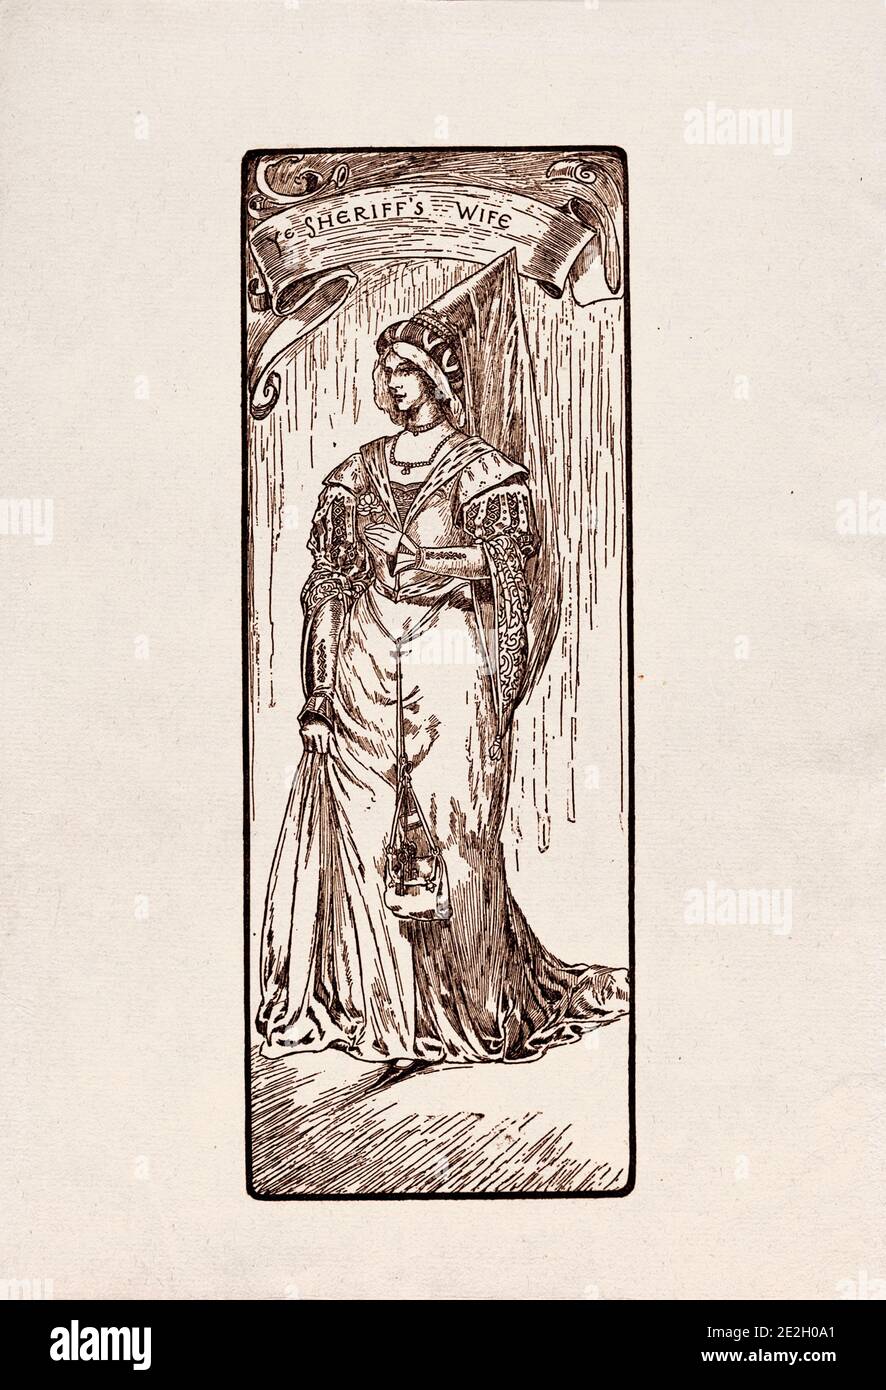 Gravure antique de personnages littéraires du folklore anglais des légendes Robin des Bois. Femme du shérif. Par Louis Rhead. 1912 Banque D'Images